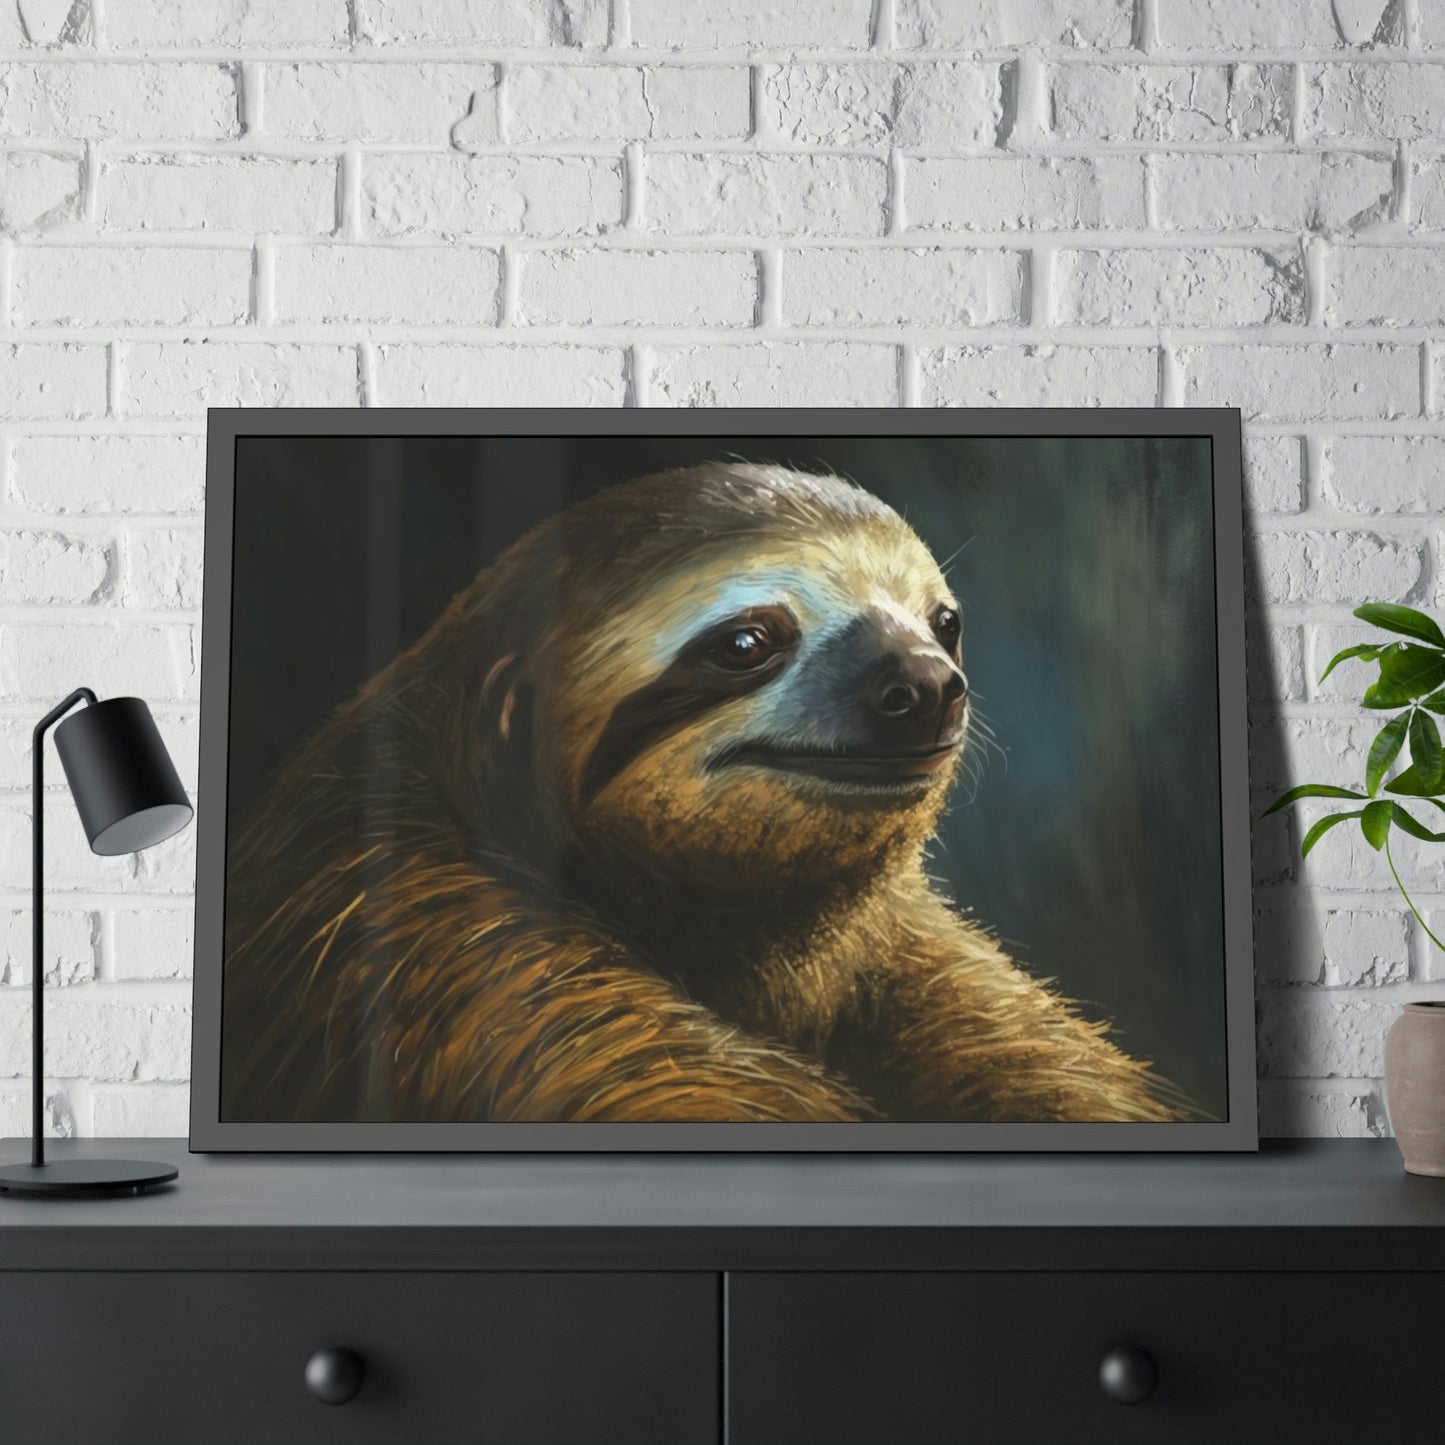 Sloth Sanctuary: A Peaceful Rainforest Retreat